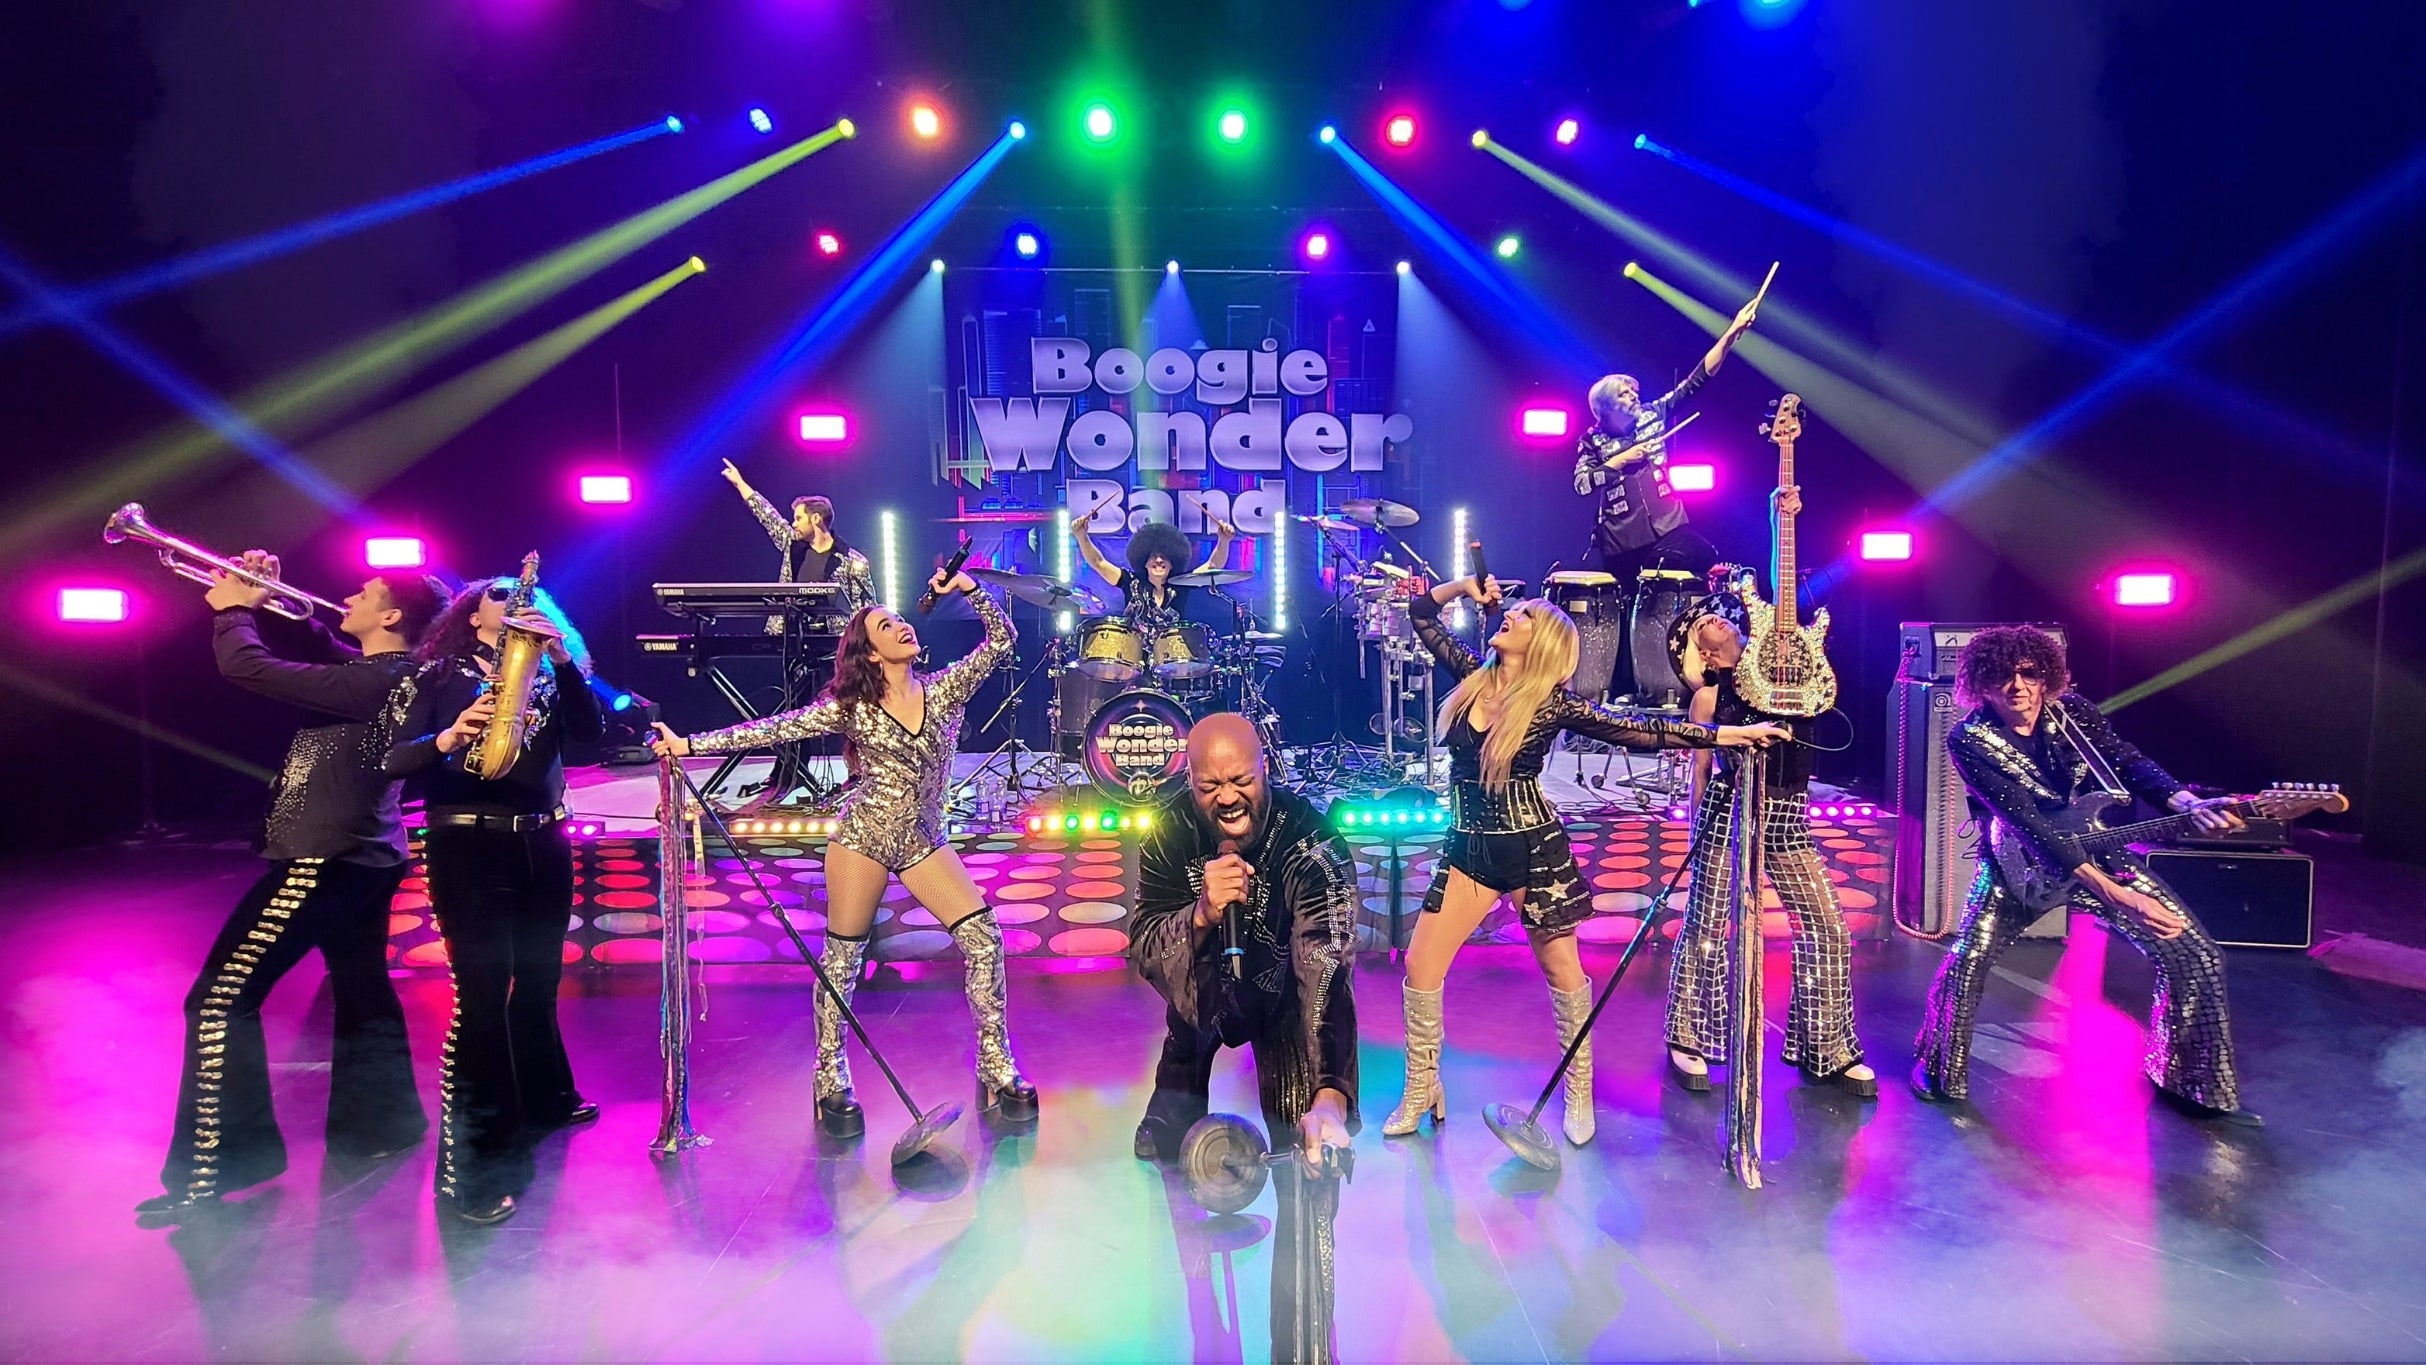 Boogie Wonder Band presales in Brossard